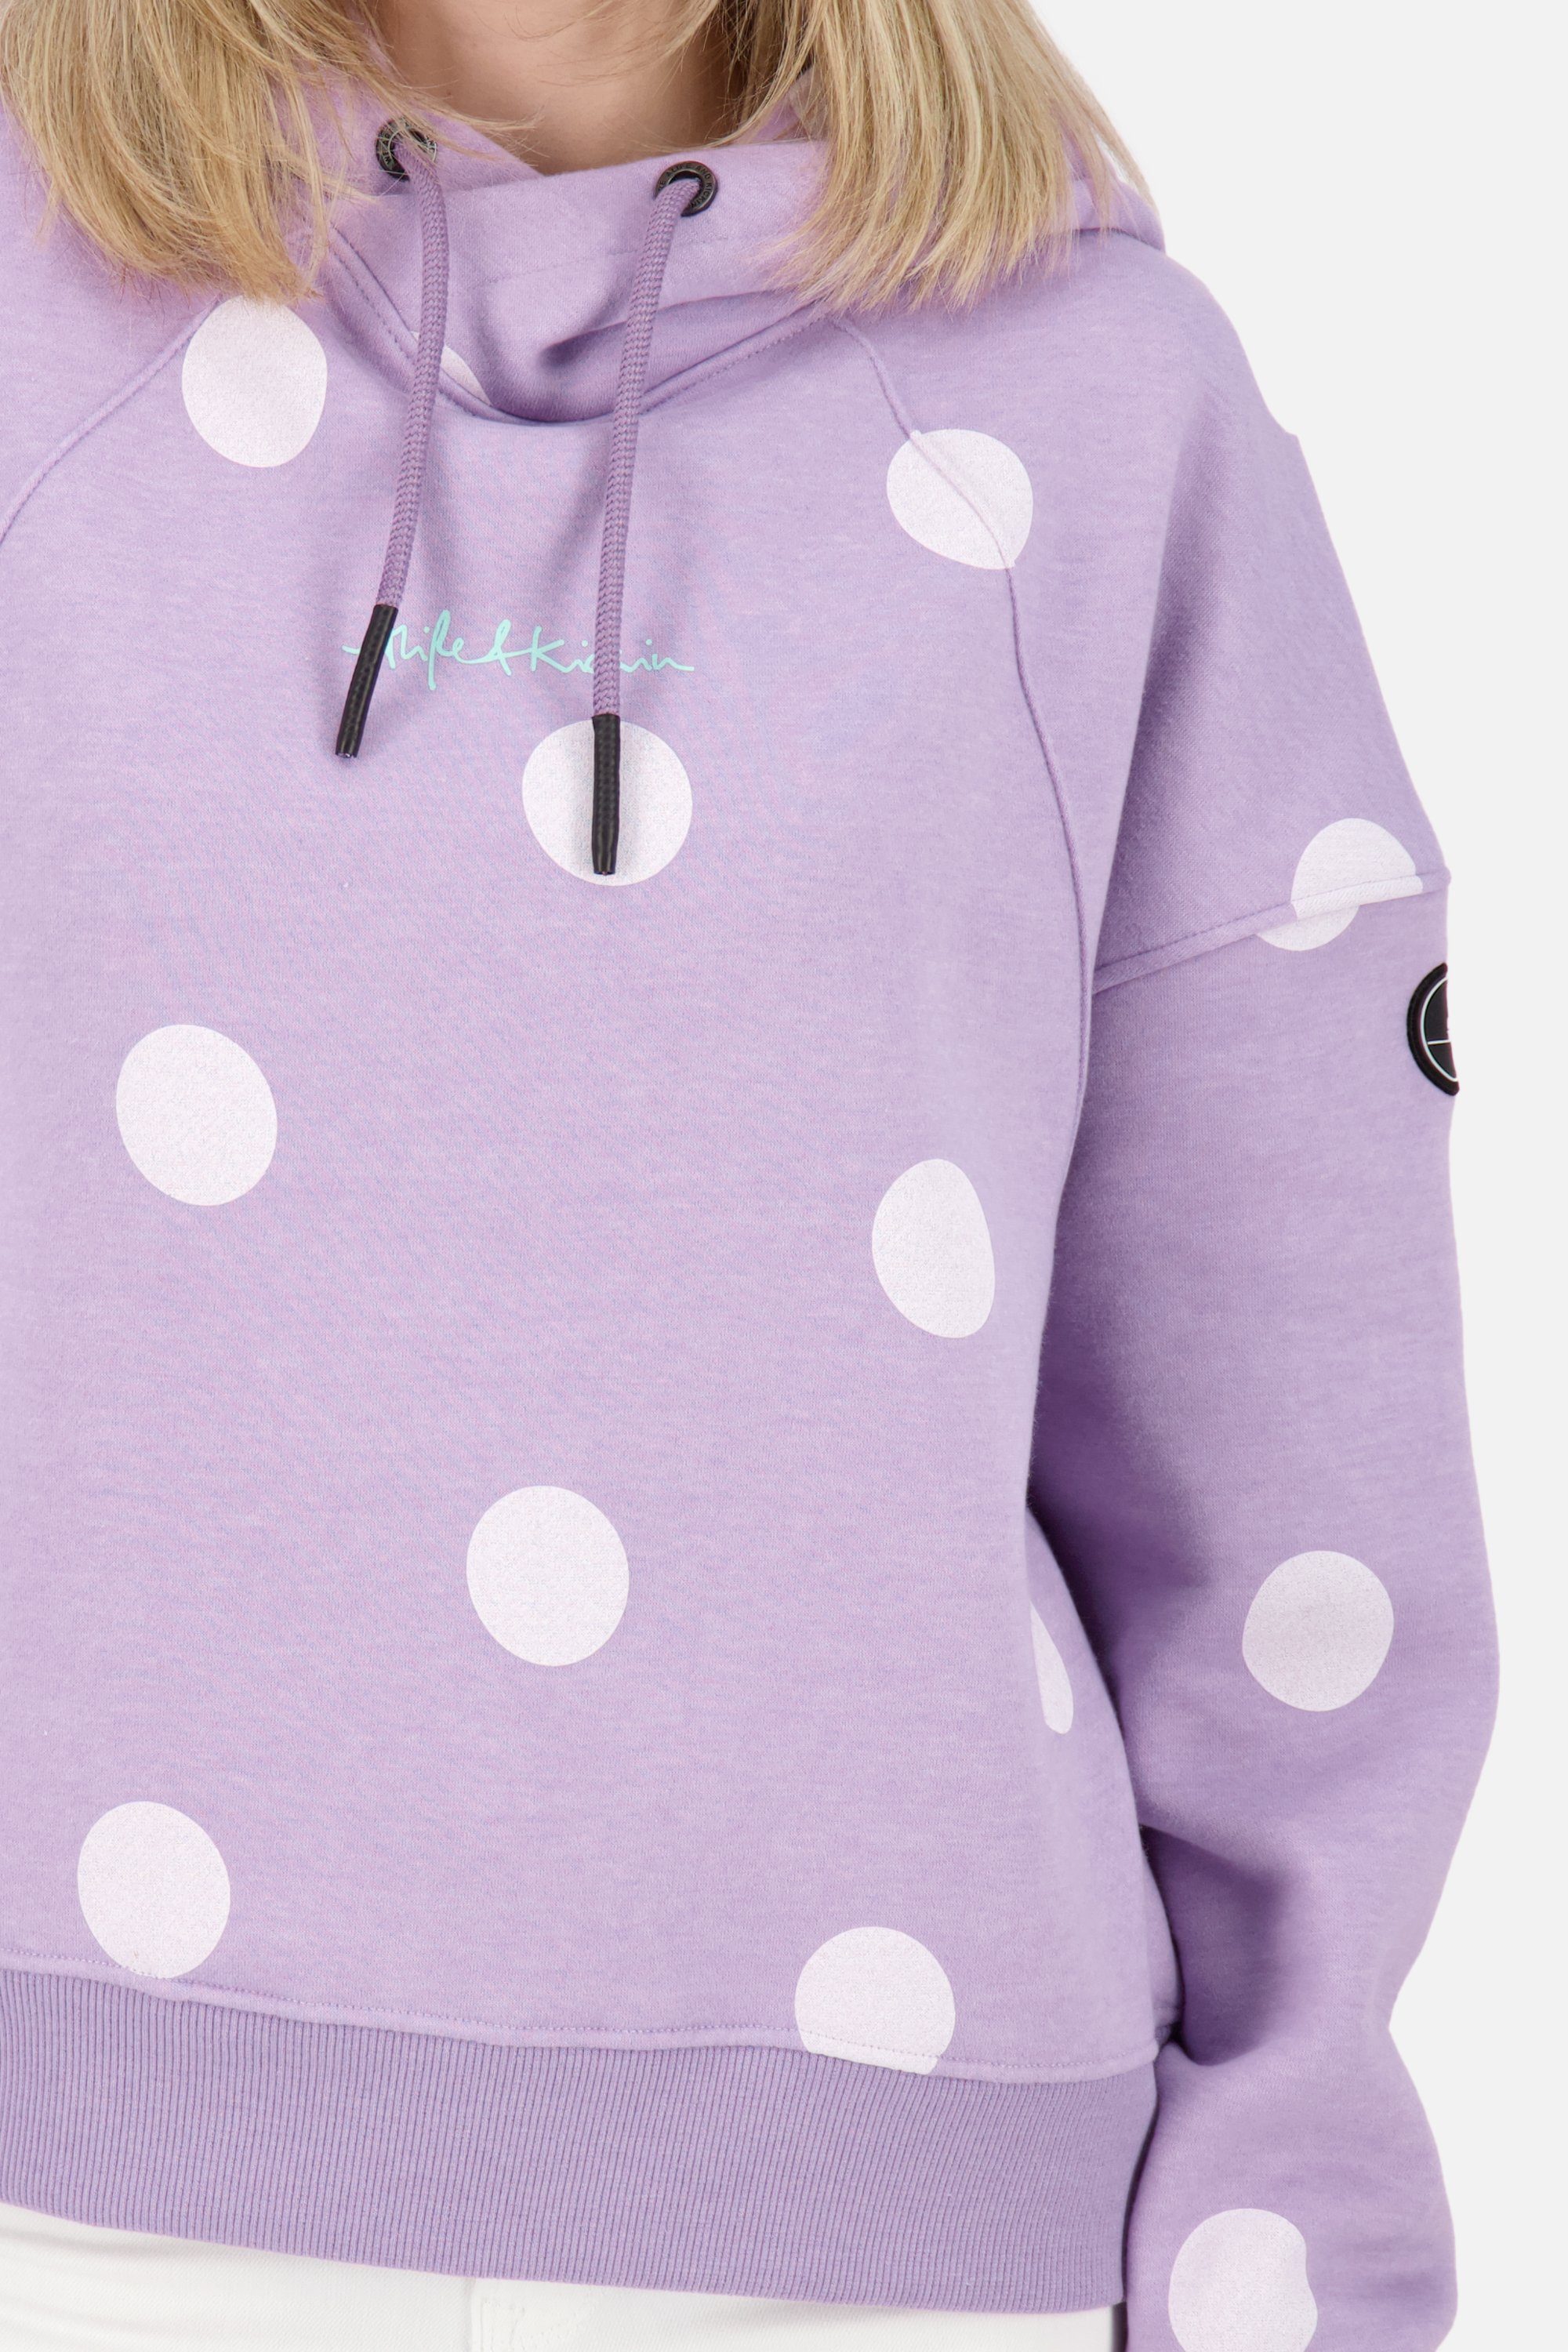 Kapuzensweatshirt Kickin Kapuzensweatshirt, Alife Sweatshirt & Damen JessyAK B melange Hoodie lavender digital Pullover